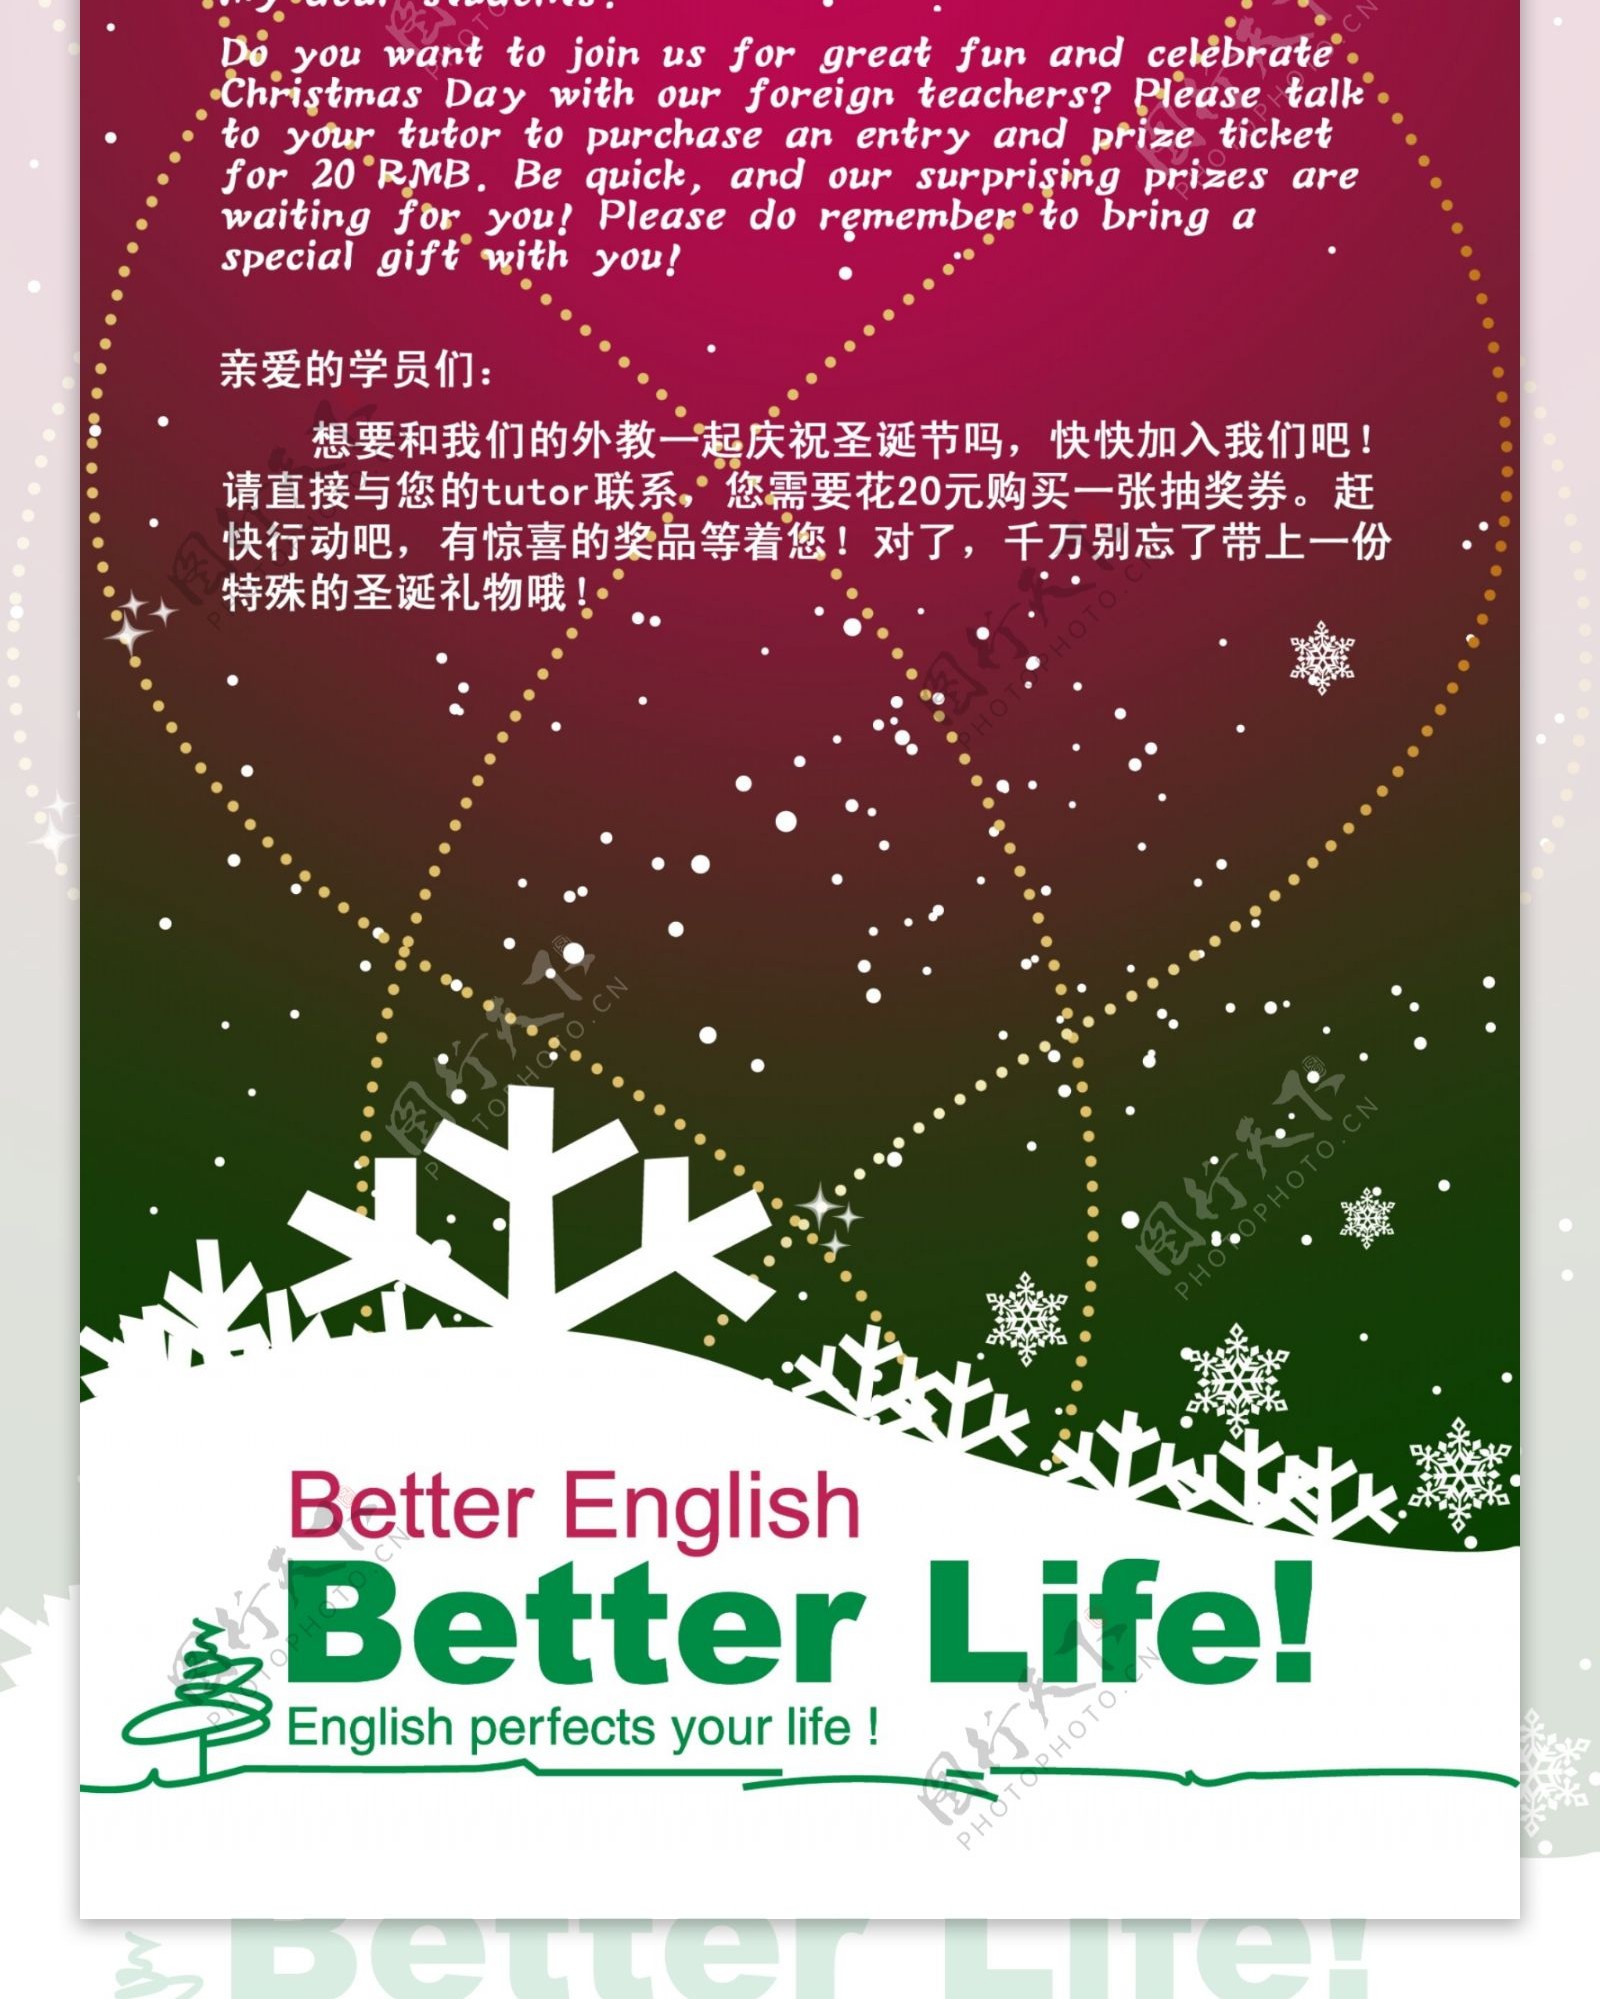 国际英语圣诞节活动海报